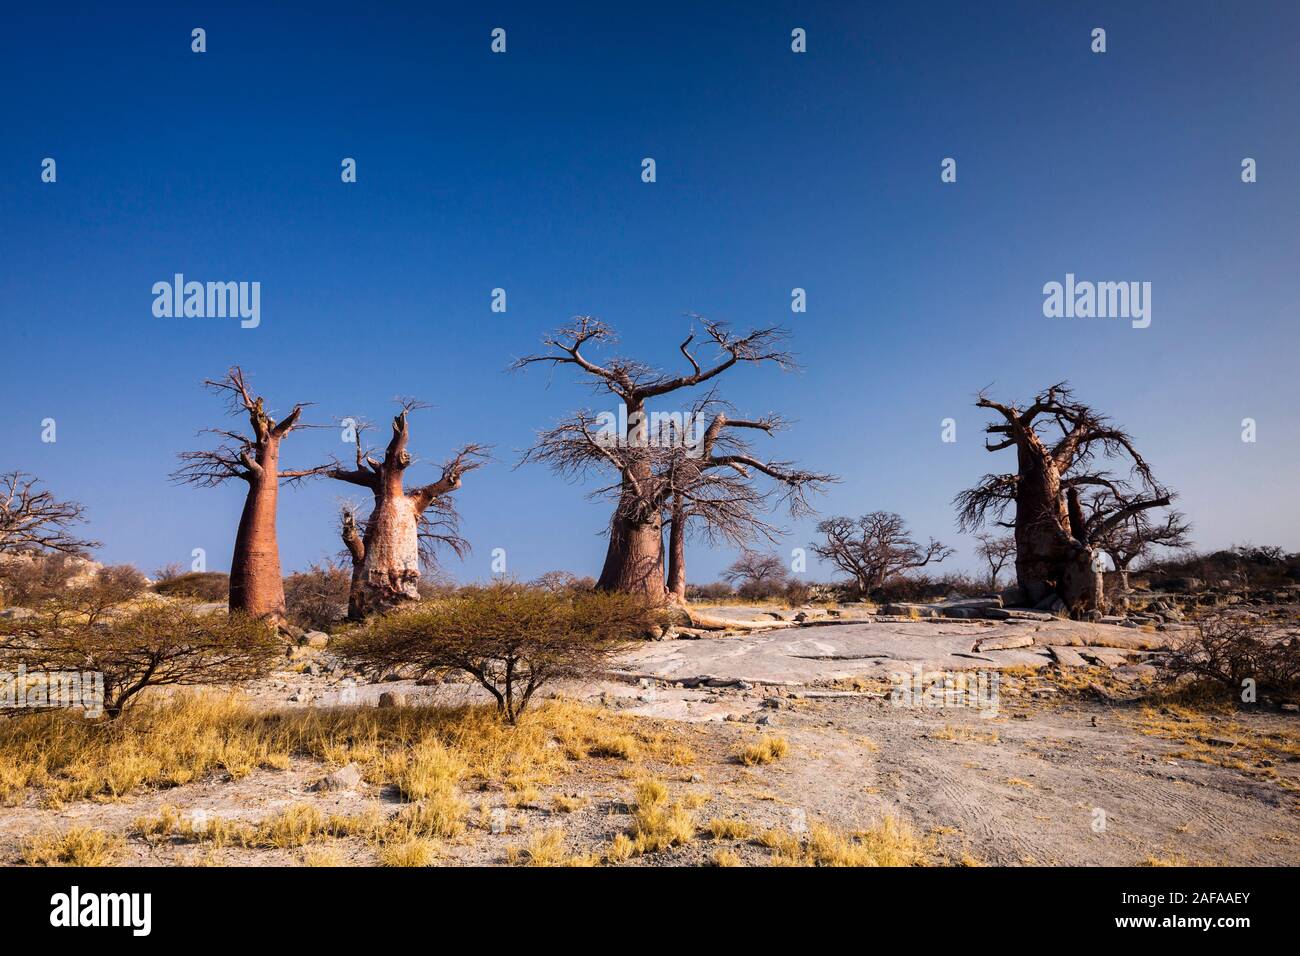 Giant baobab trees in Kubu island, Sowa pan(Sua pan), Makgadikgadi pans, Botswana, Southern Africa, Africa Stock Photo